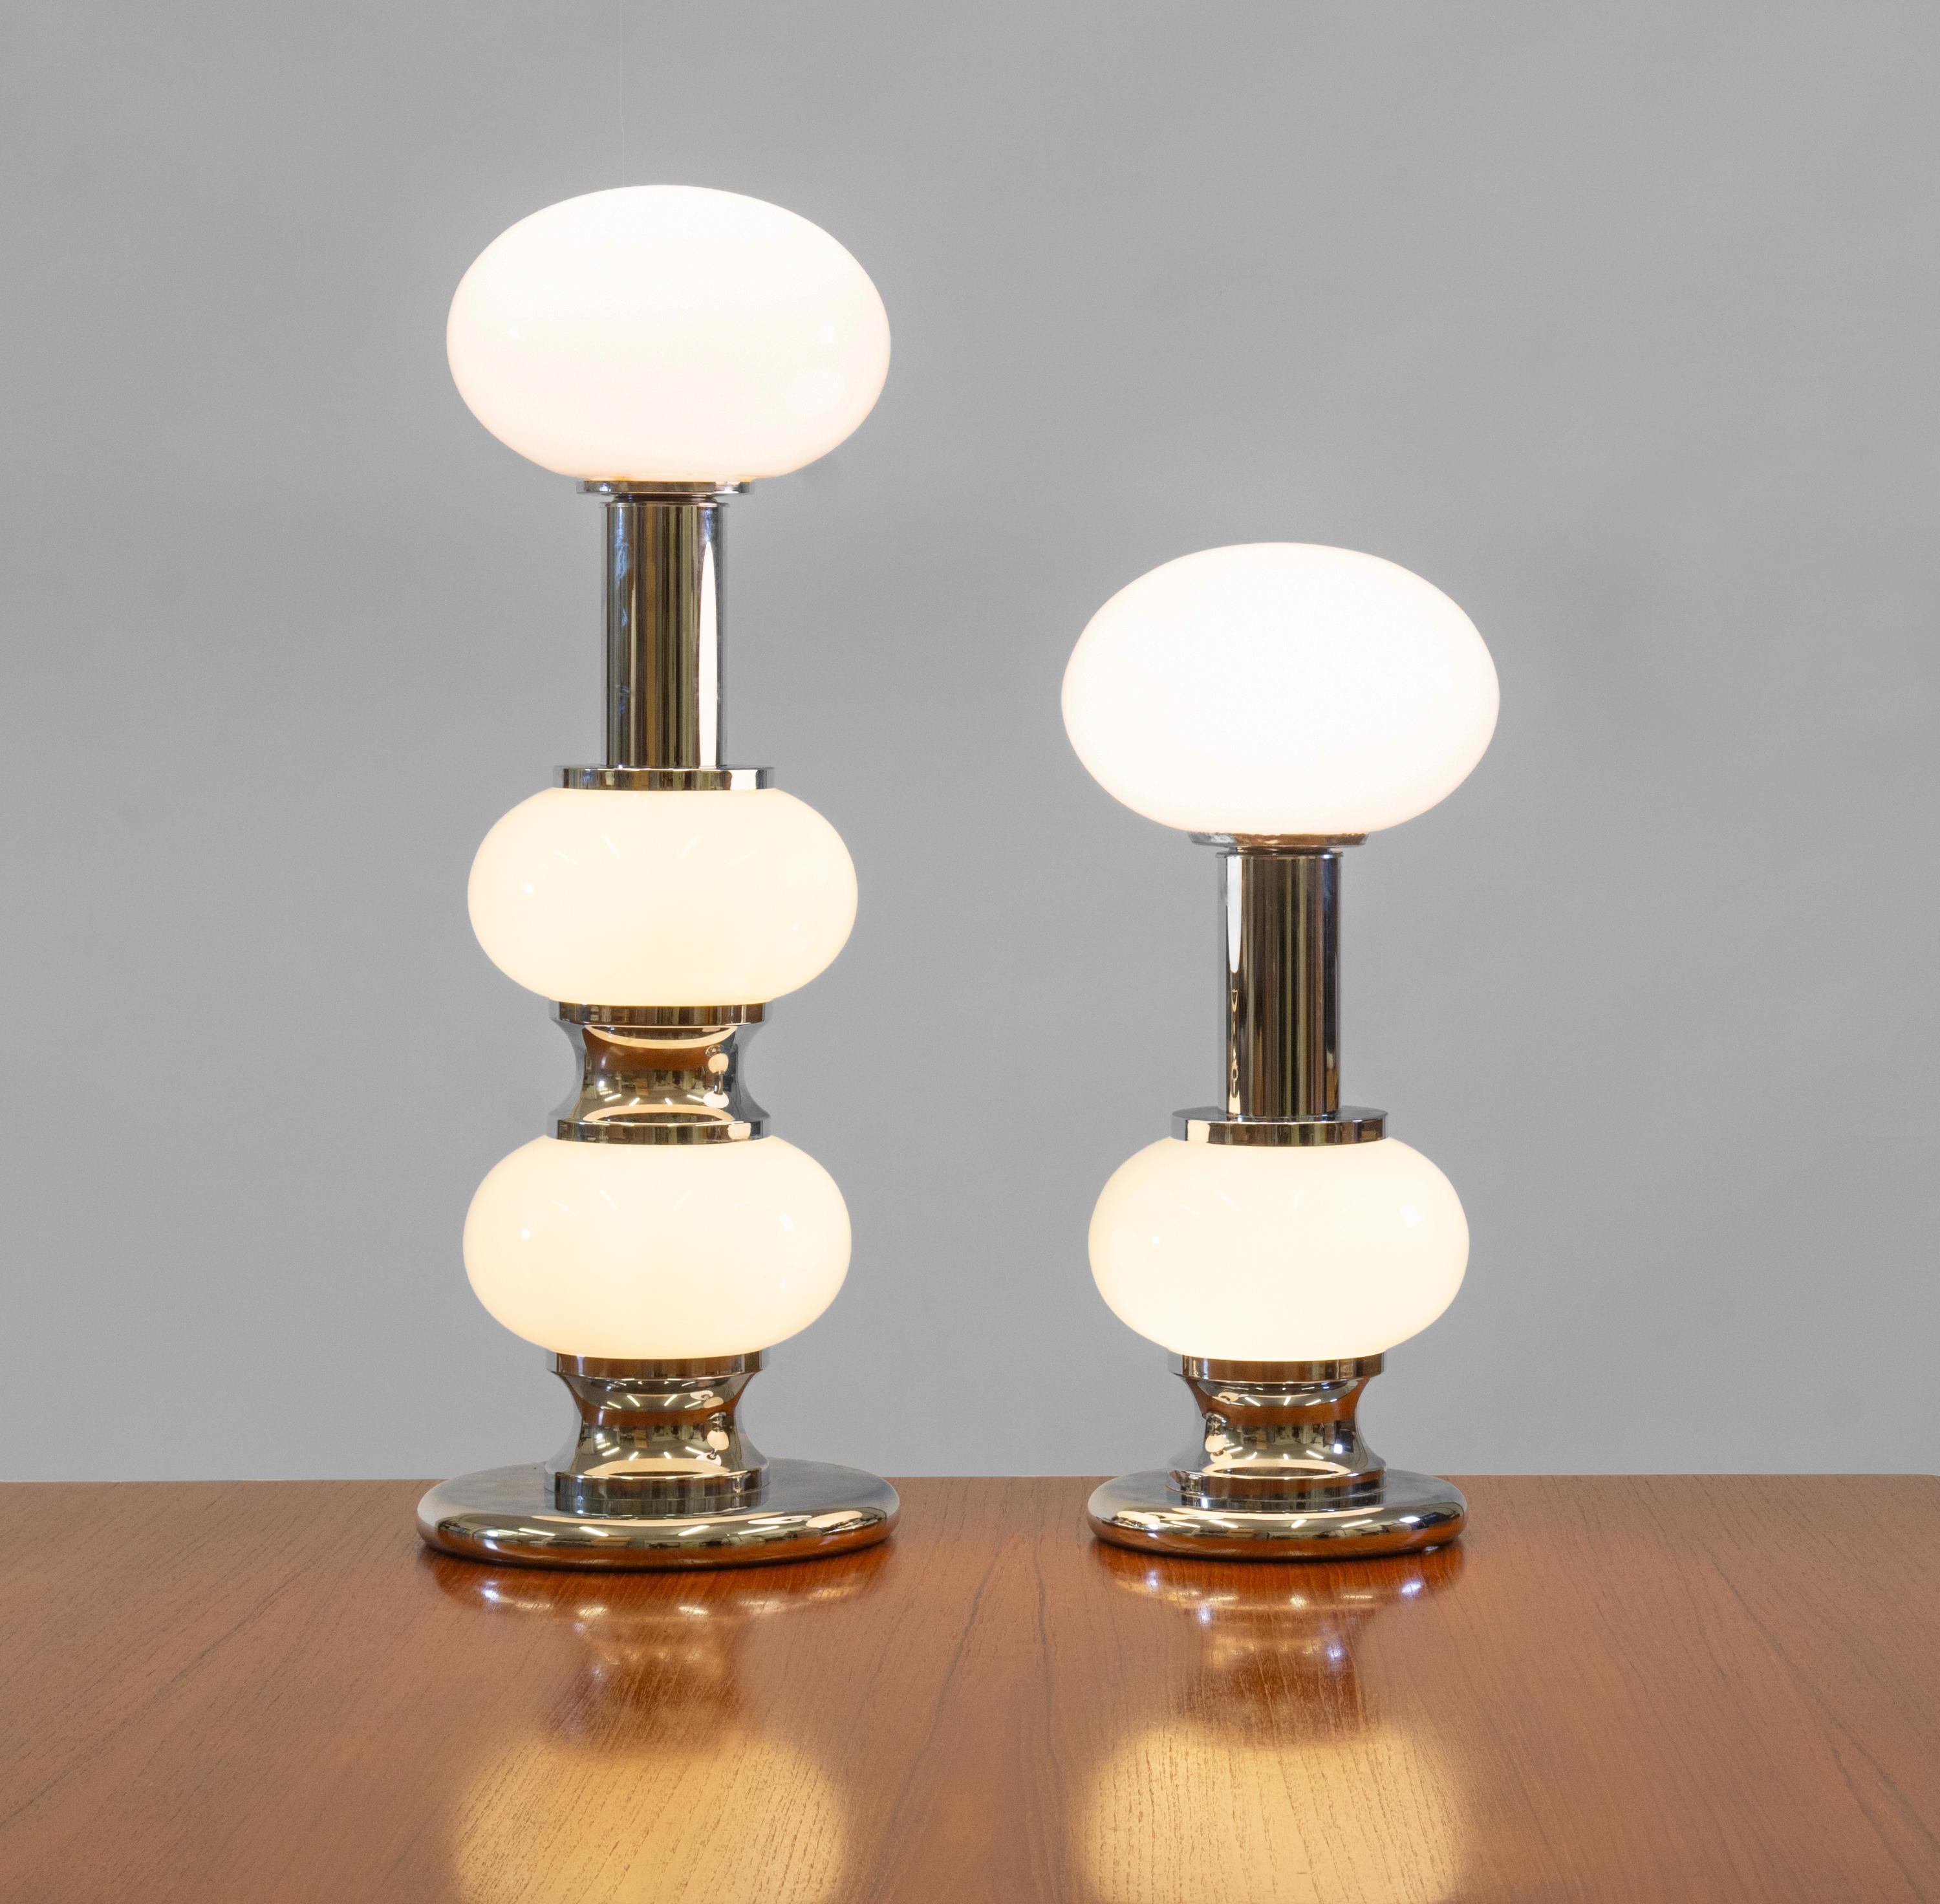 Deux lampes de table modernistes vintage chromées et en verre blanc opaque, conçues et fabriquées par Sölken Leuchten en Allemagne dans les années 1970. Label partiel à un.

Livraison incluse au Royaume-Uni continental.

Les lampes ont des